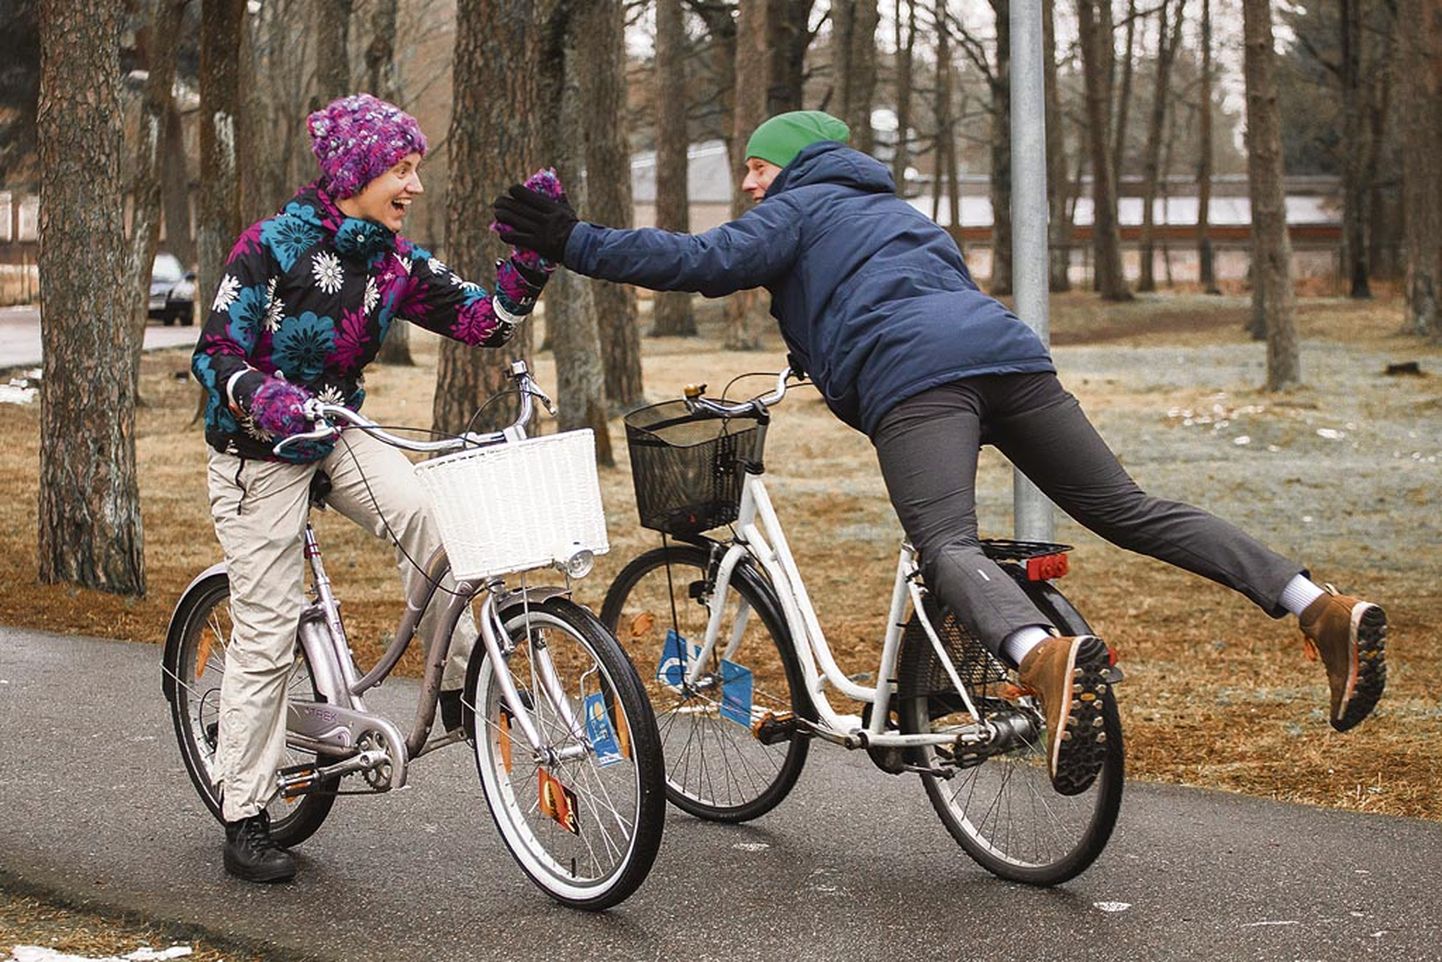 Kadri Killing (vasakul) ja Margo Märtsoo sõidavad rattaga pea iga ilmaga, sest kondimootoriga jõuab isegi külmal ajal kiiremini kohale, kuna ära jääb auto soojendamise ja akende kraapimise vaev.